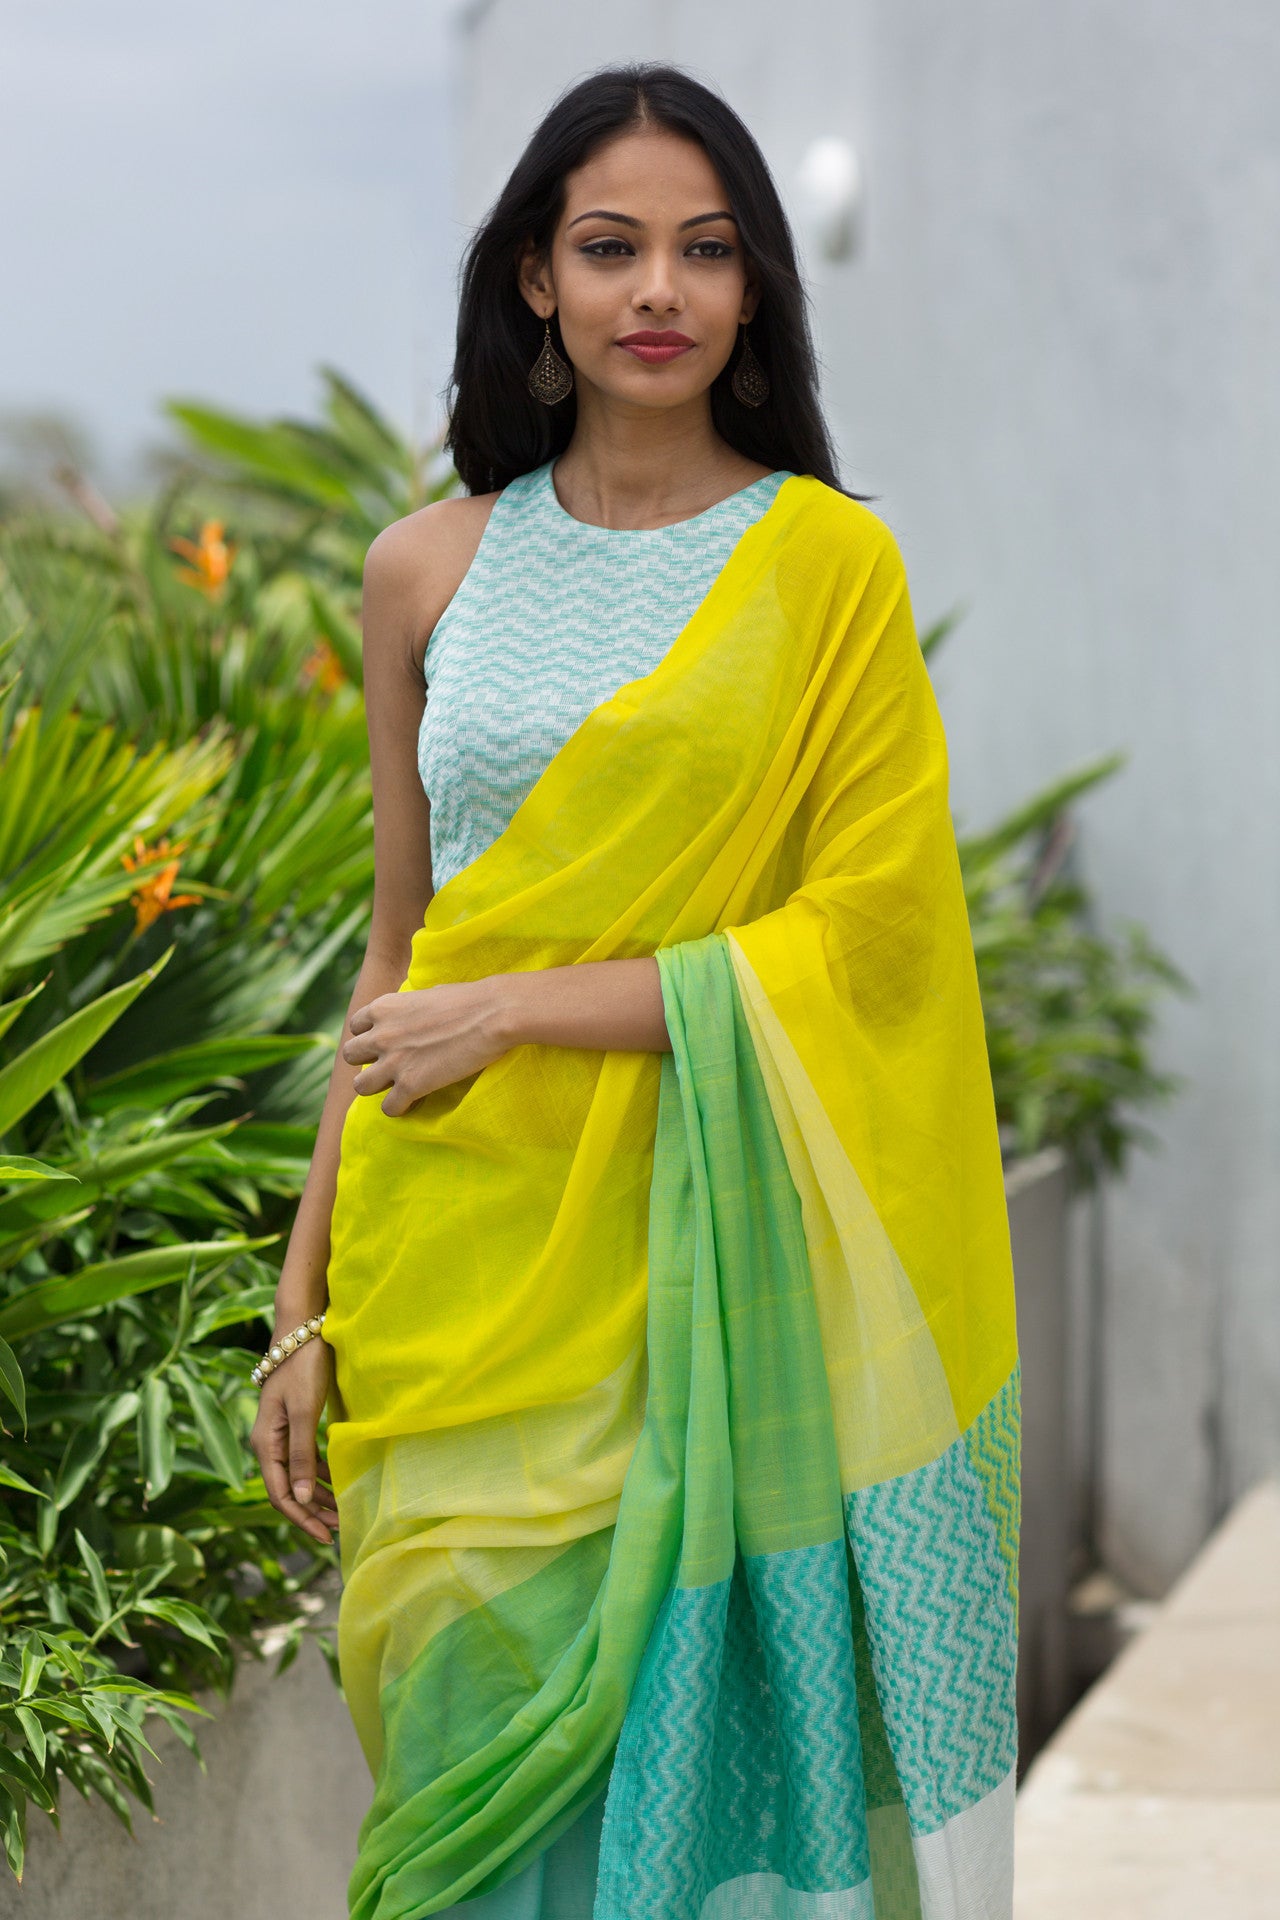 Sri Lanka Saree Styles